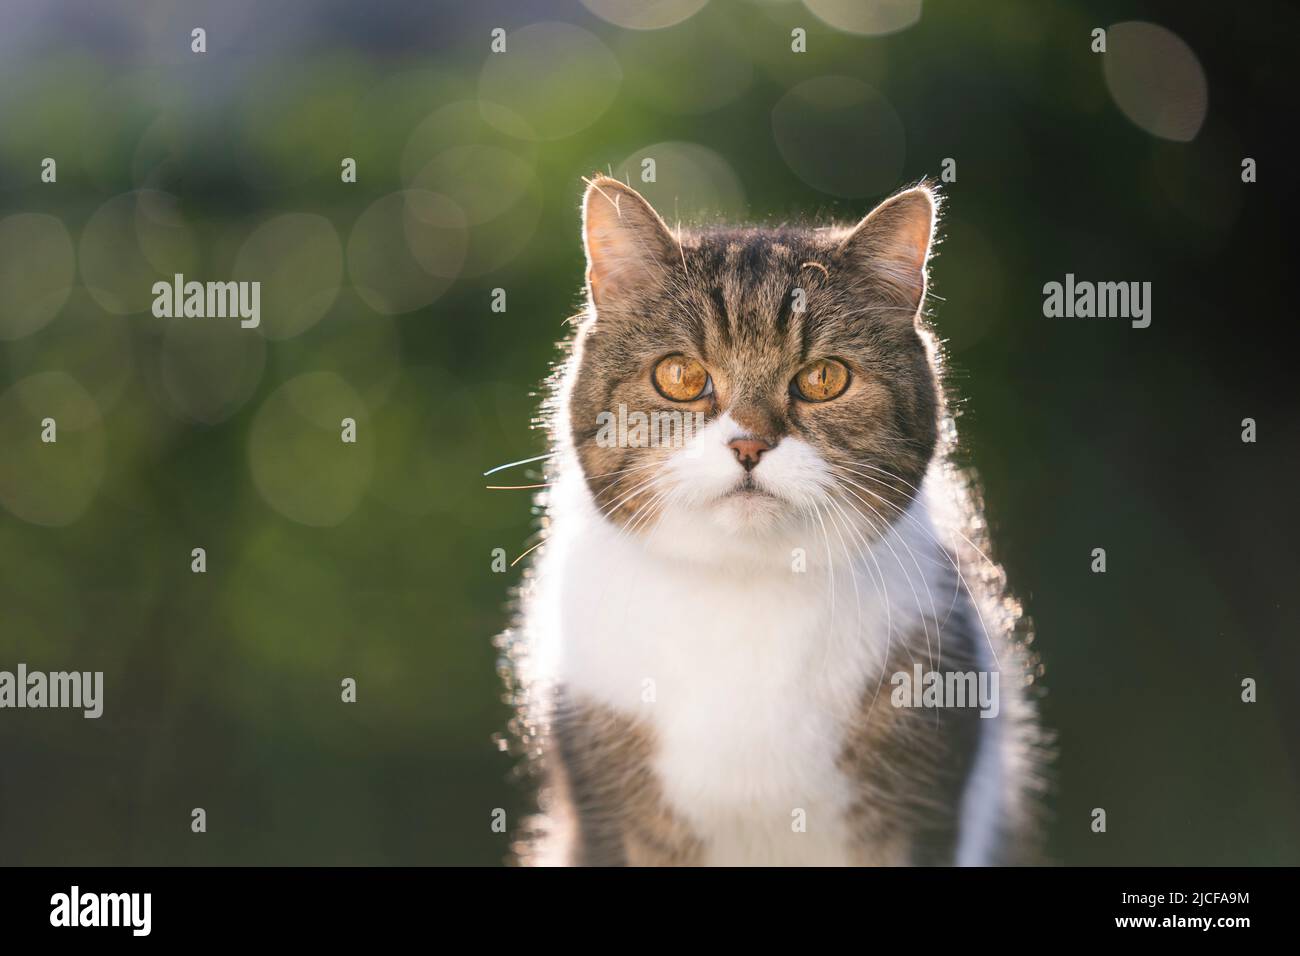 tabby blanc british shorthair chat portrait extérieur en contre-jour Banque D'Images